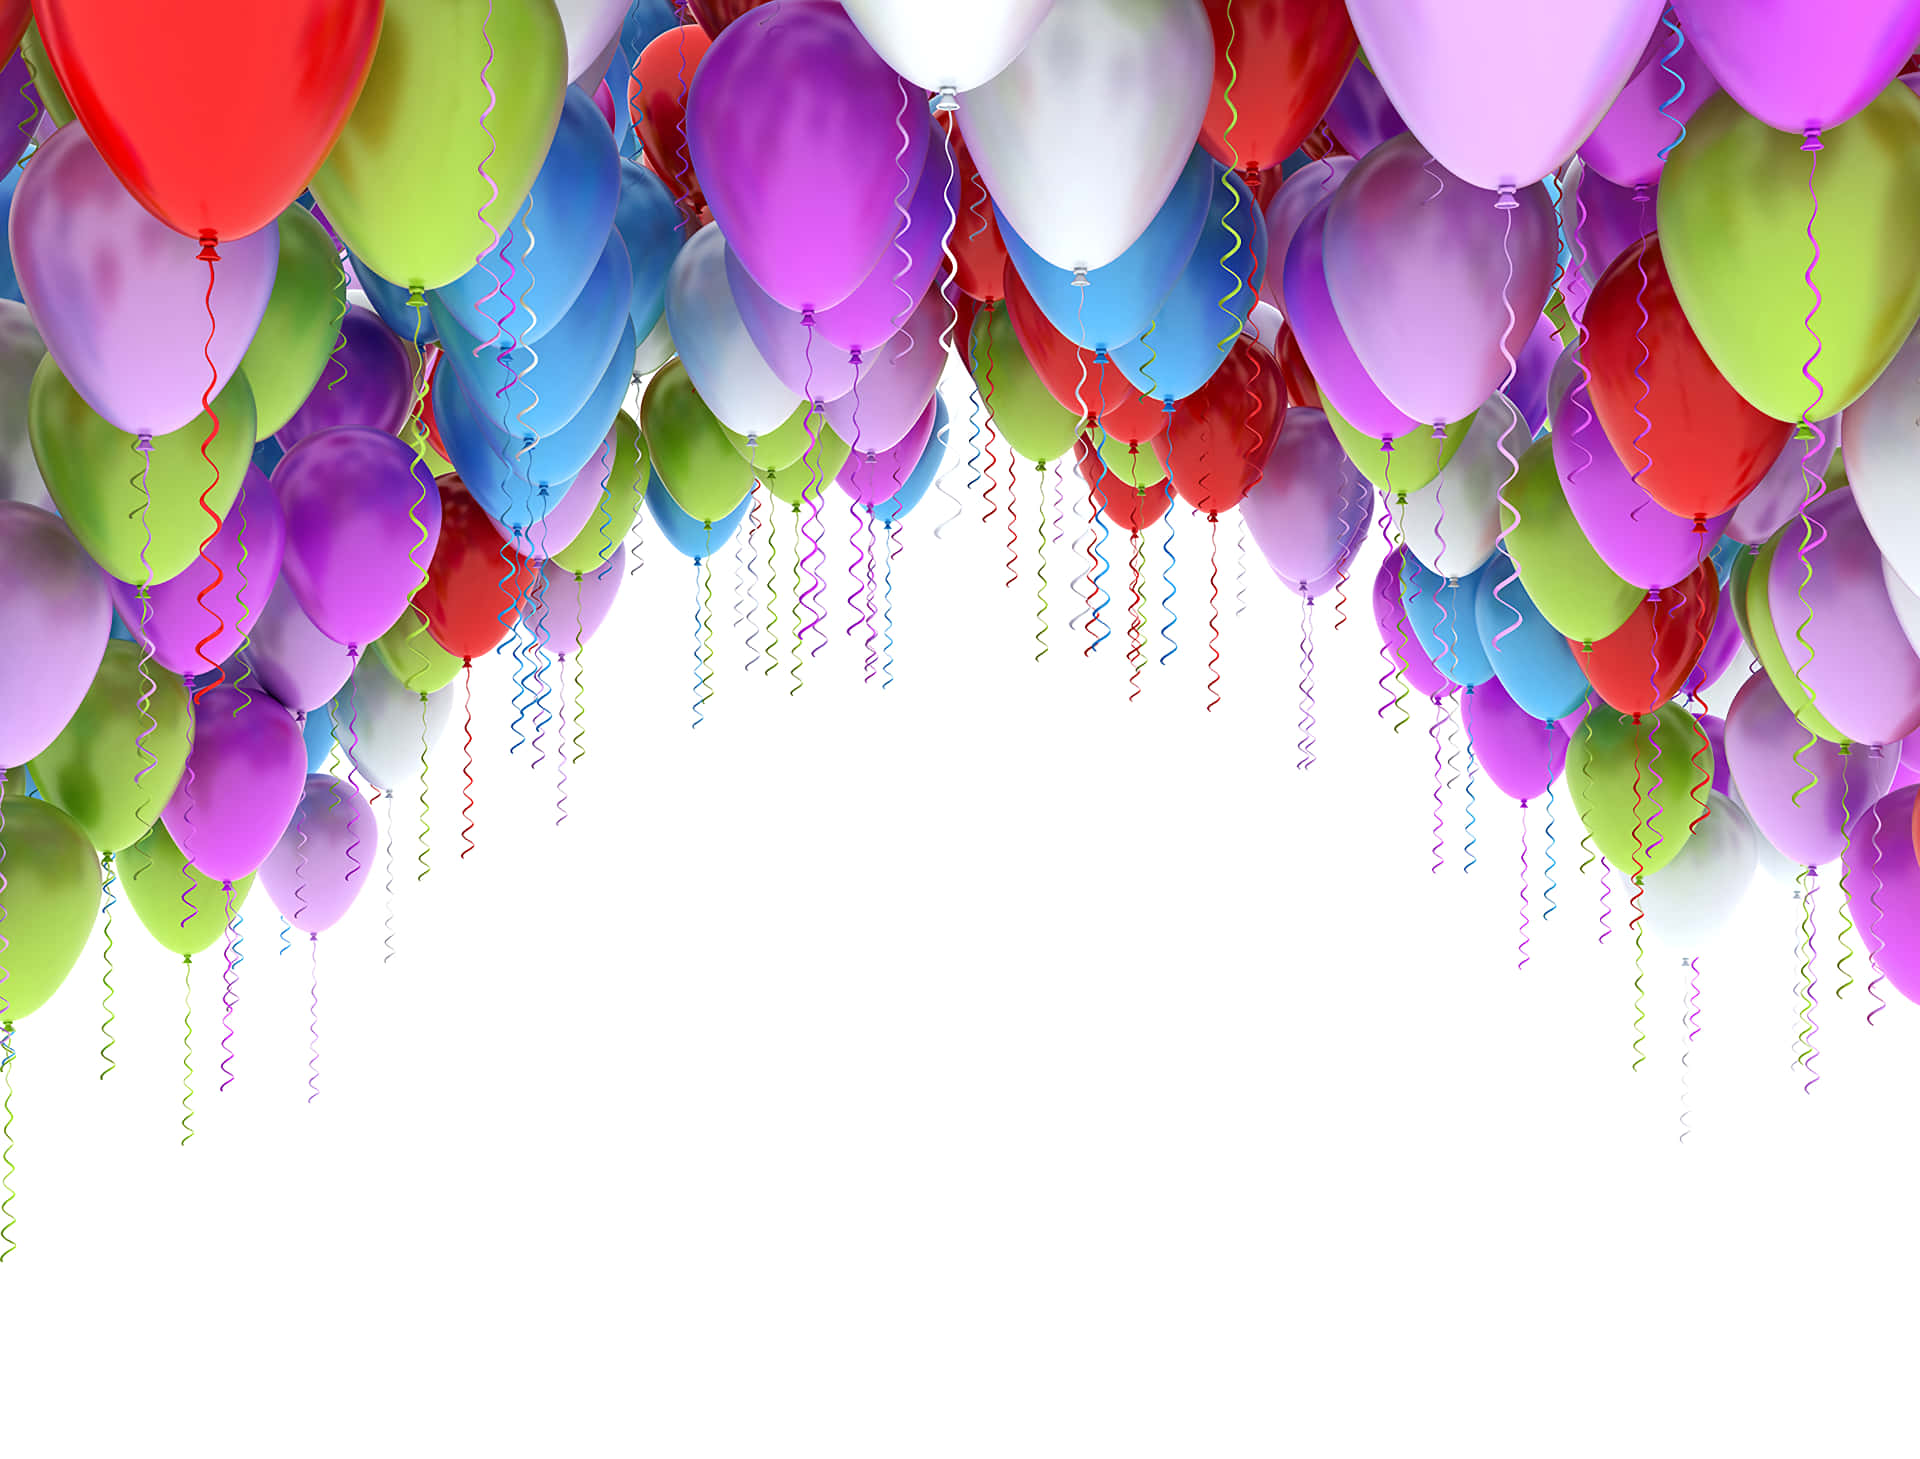 Balõesde Aniversário Flutuando Na Imagem De Cima.